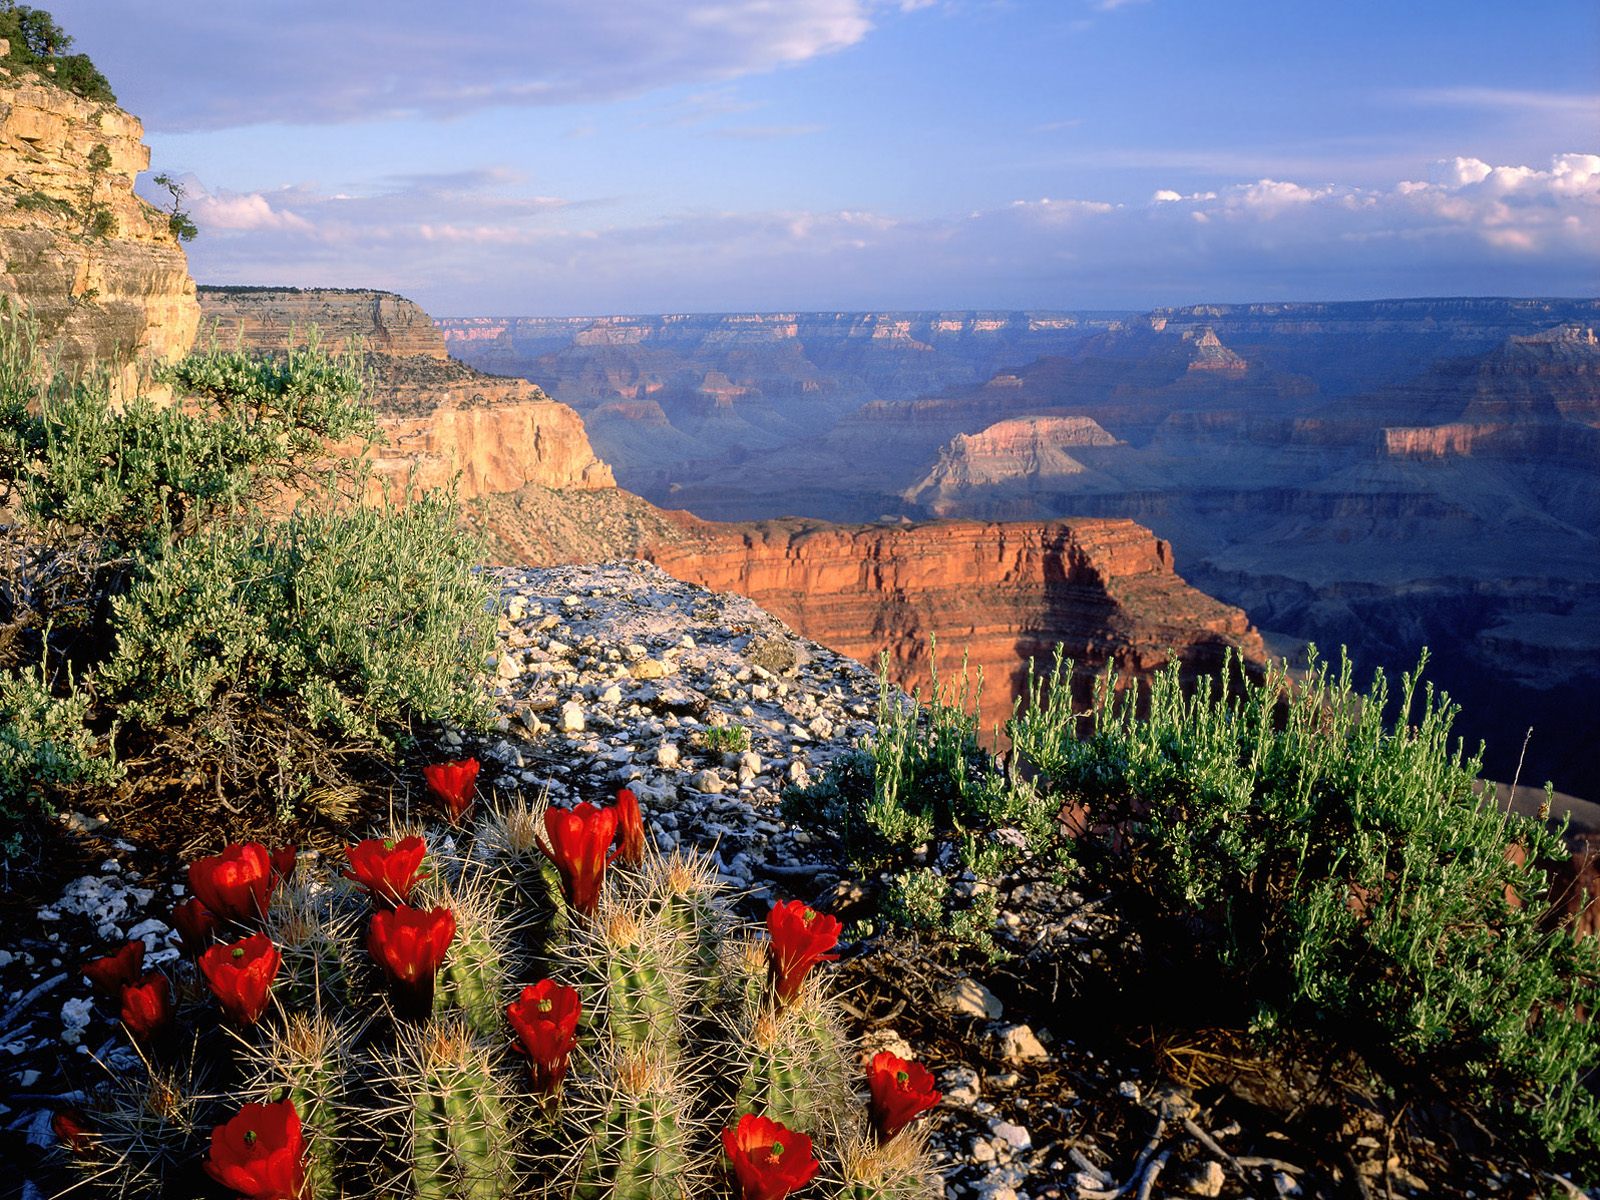 Claret Cup Cactus Grand Canyon National Park A Nature Desktop